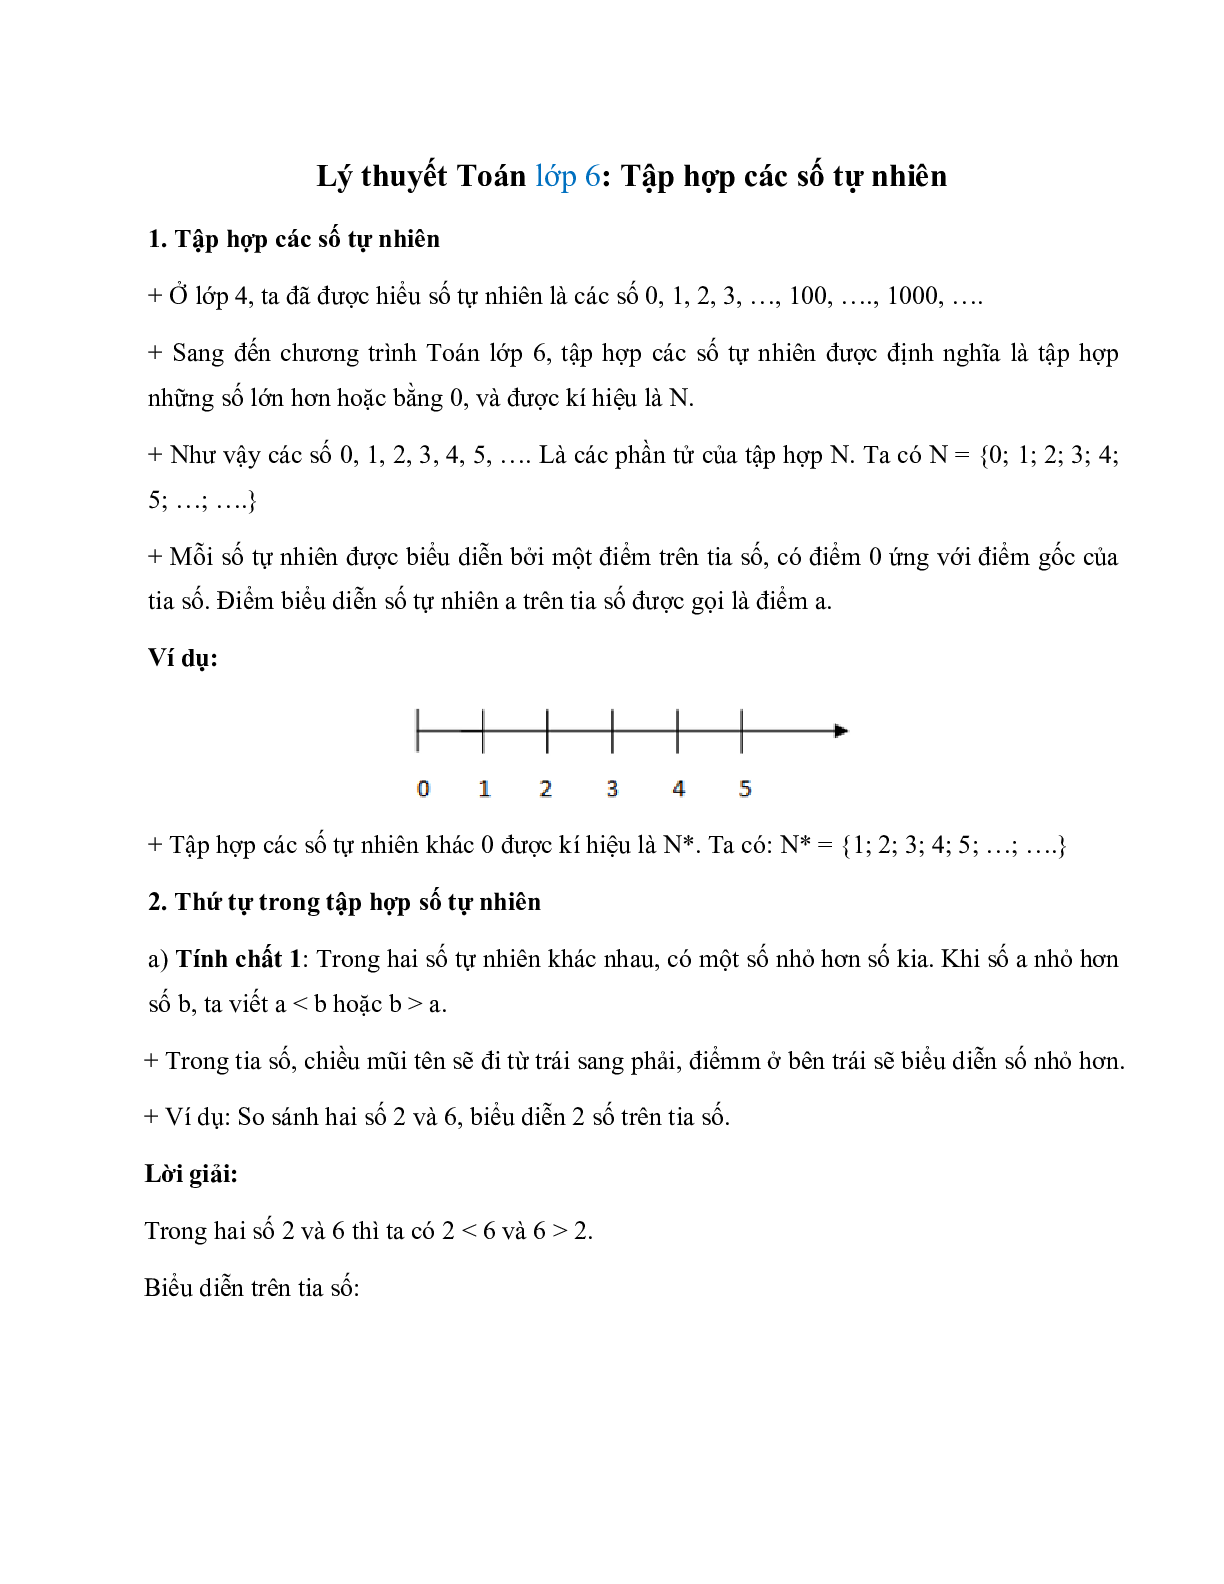 Lý thuyết Toán lớp 6 Bài 2: Tập hợp các số tự nhiên (trang 1)